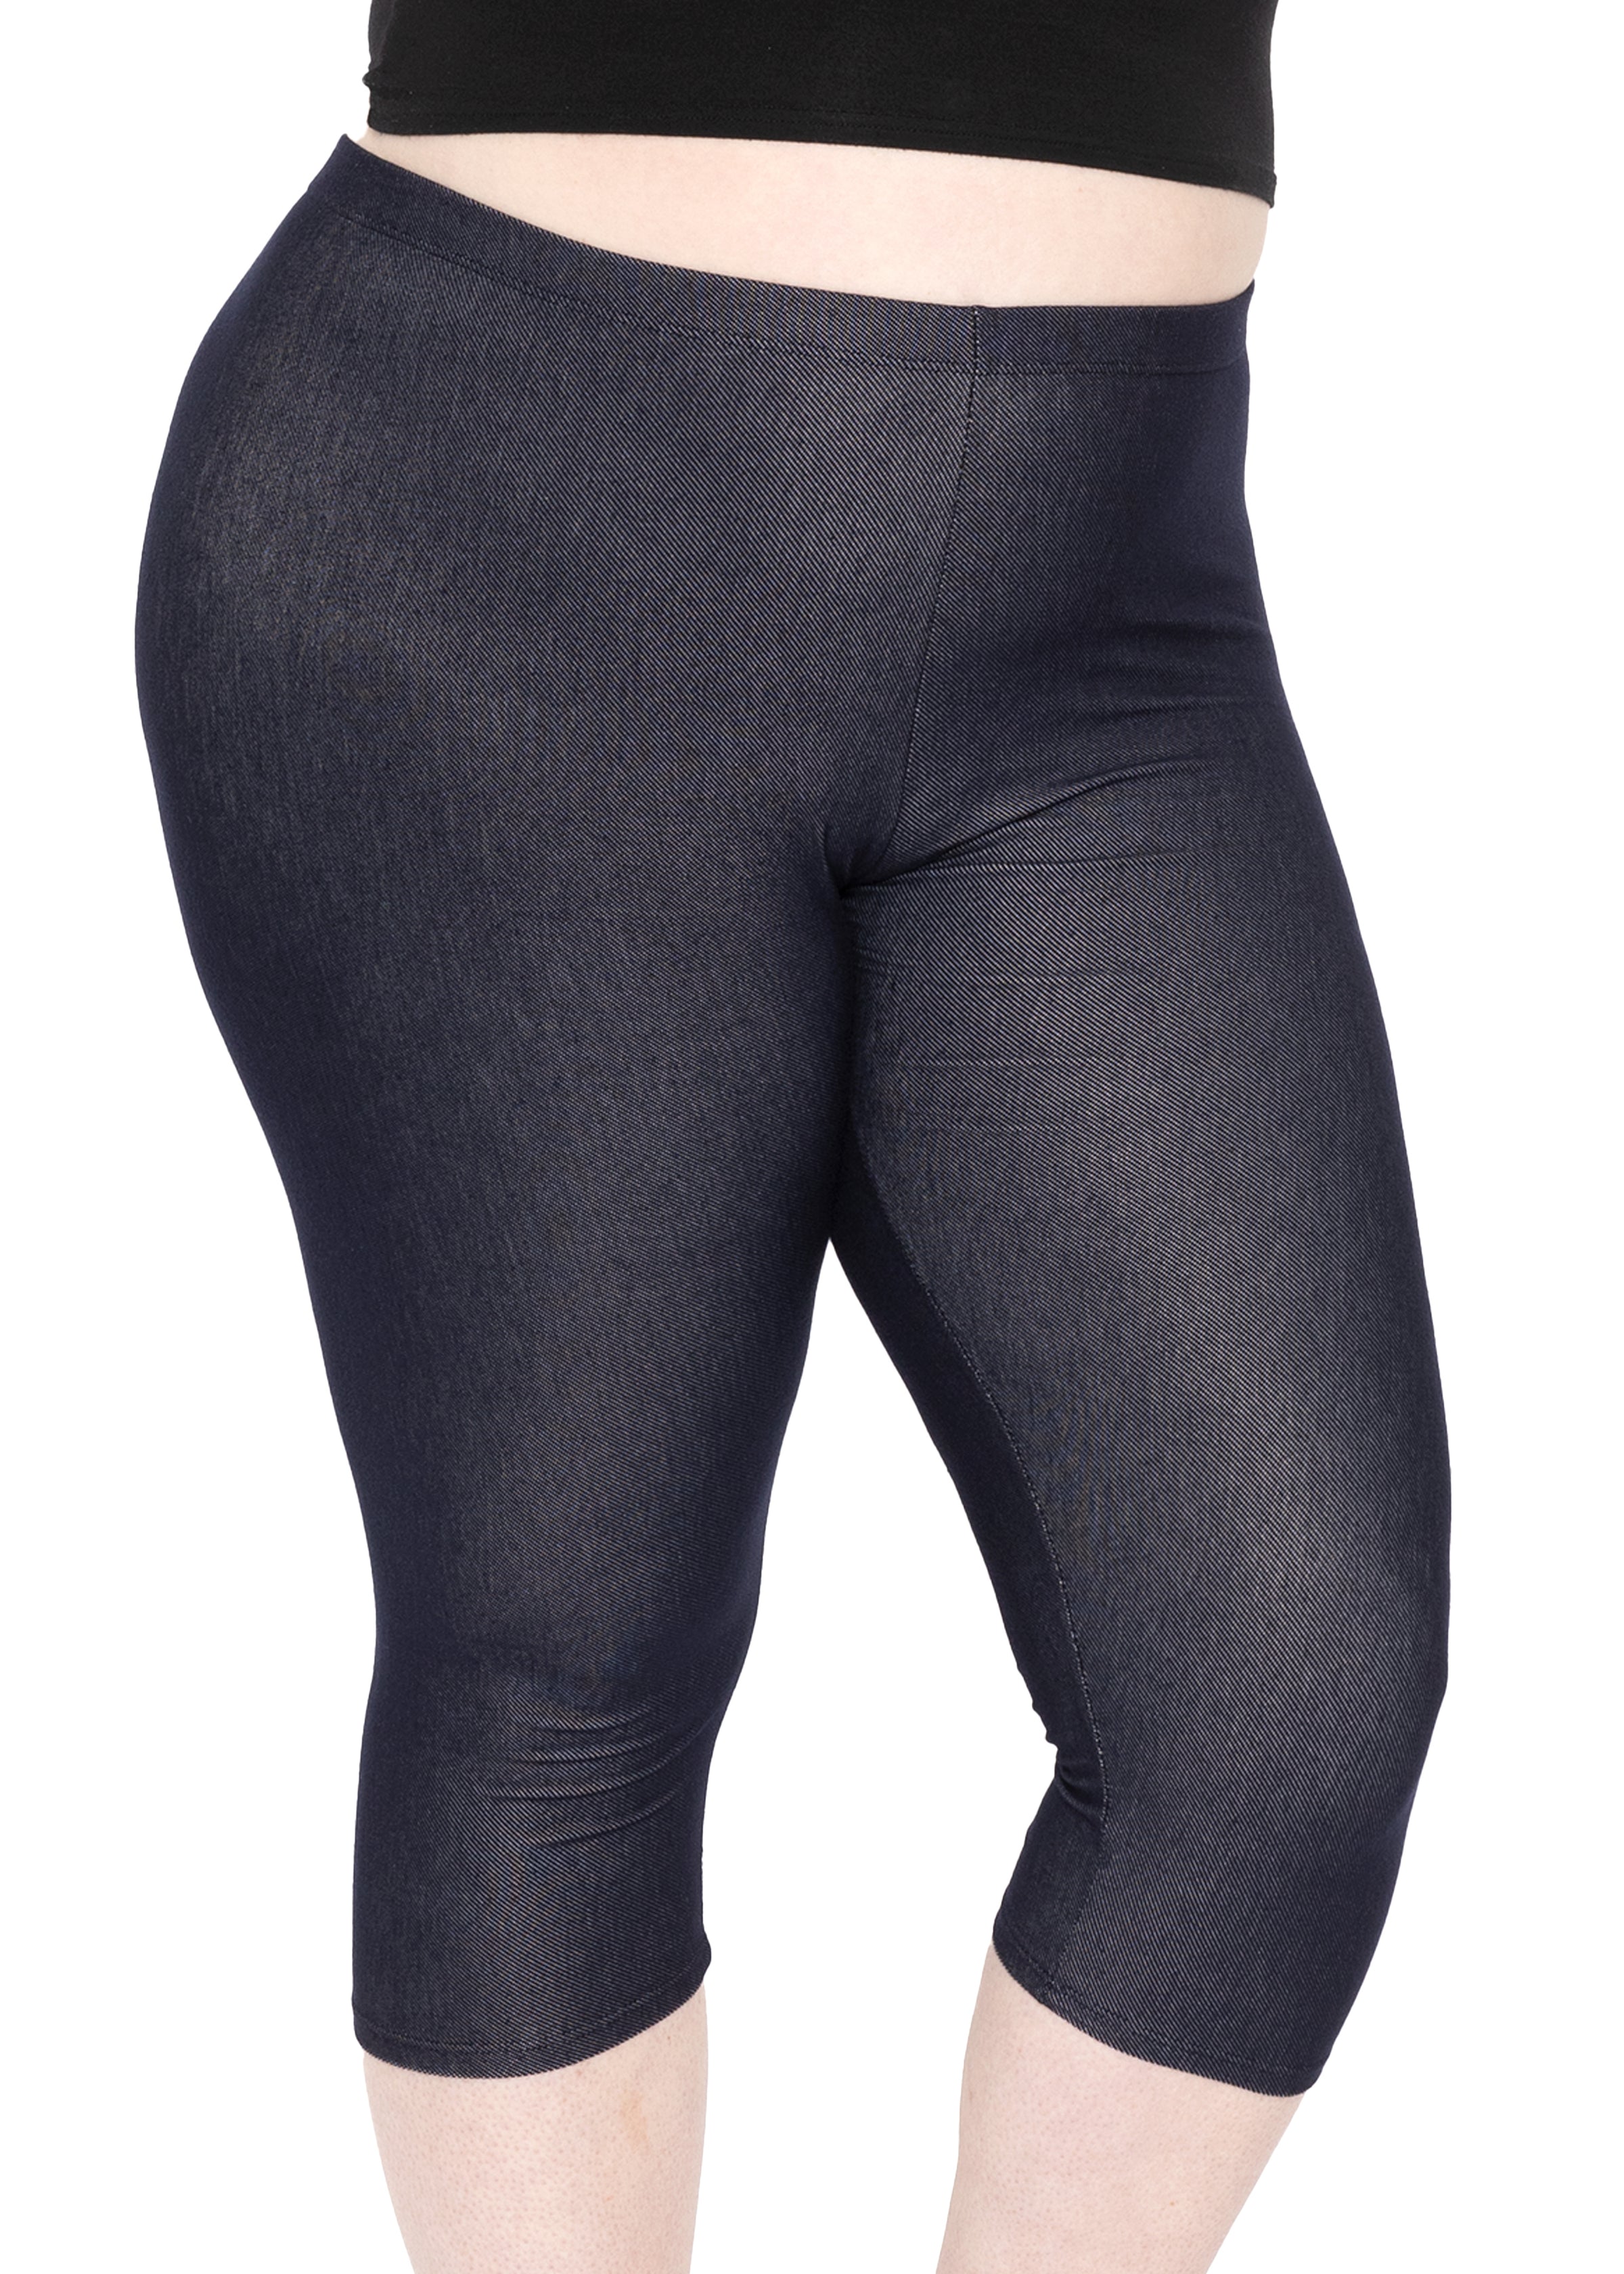 SOFRA Womens Plus Size Leggings Full Length High Waist Pants